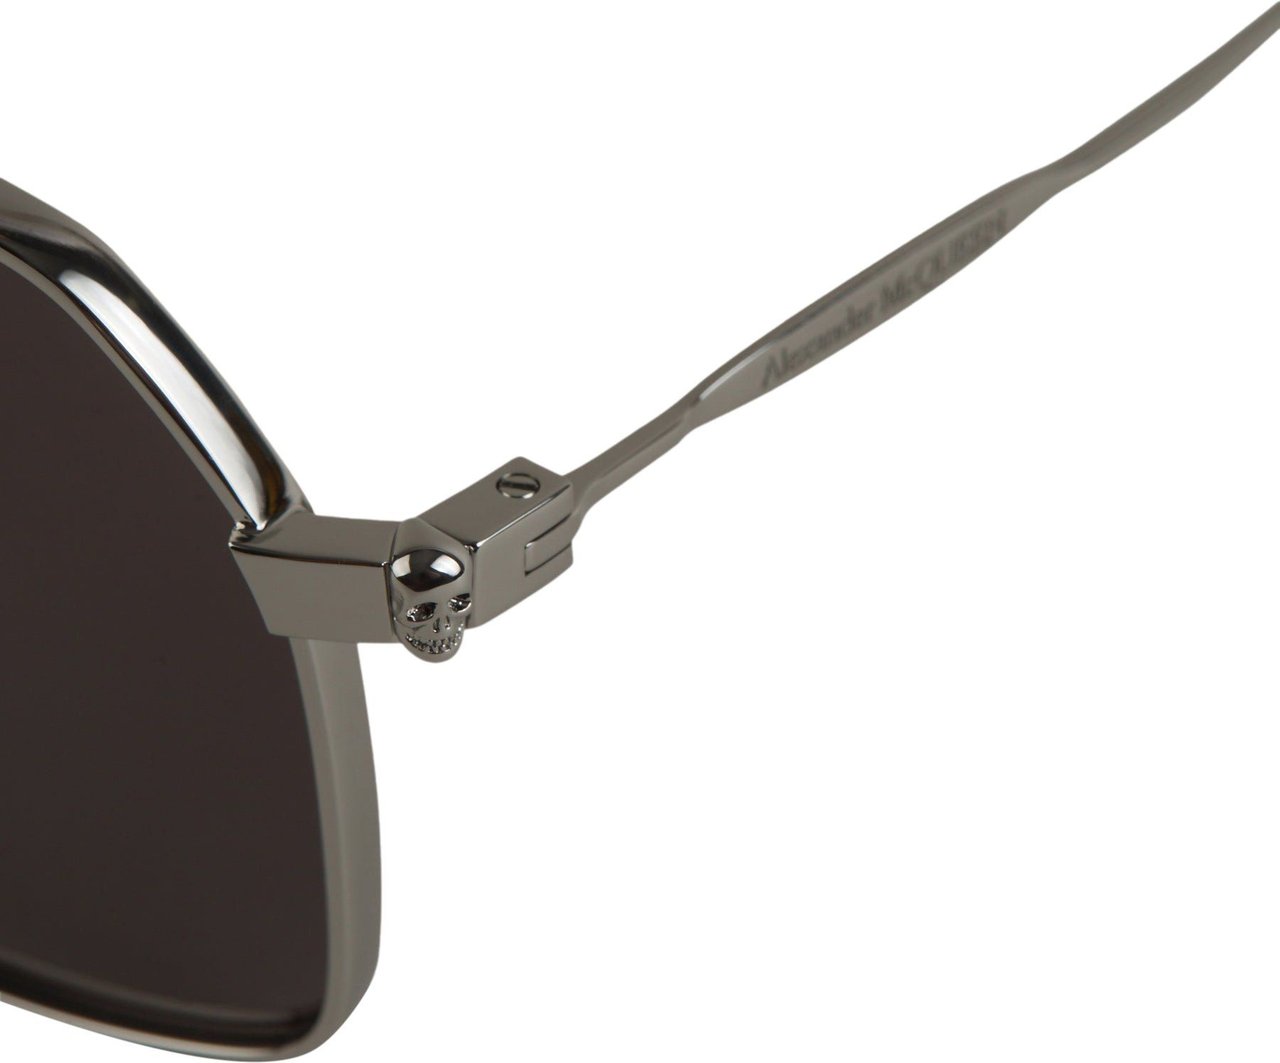 Alexander McQueen Metal Sunglasses Zilver